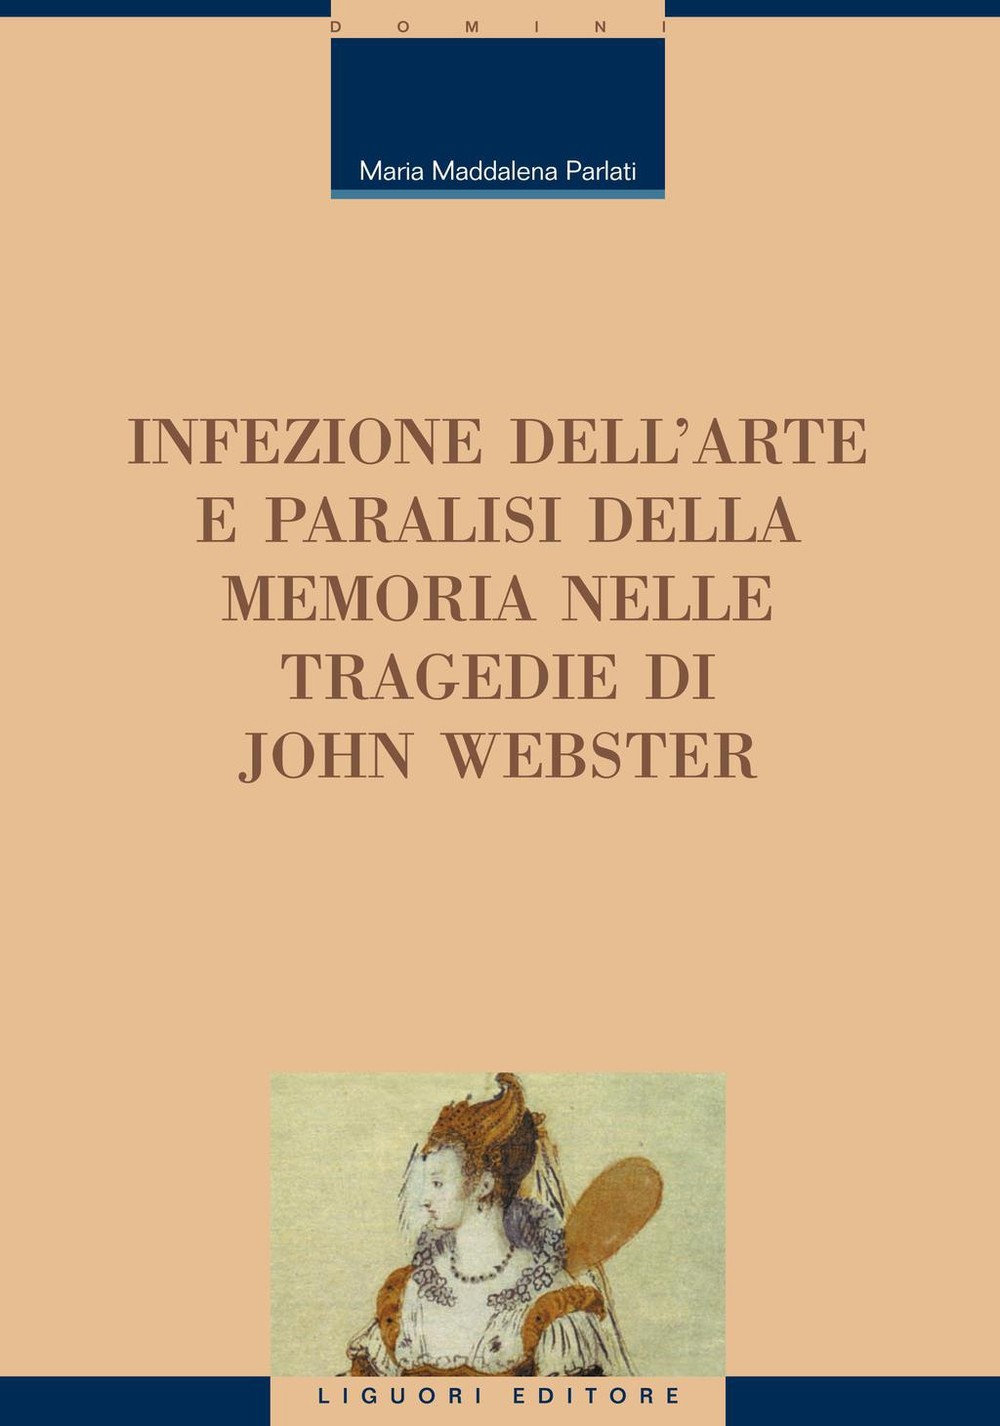 Infezione dell’arte e paralisi della memoria nelle tragedie di John Webster - Librerie.coop